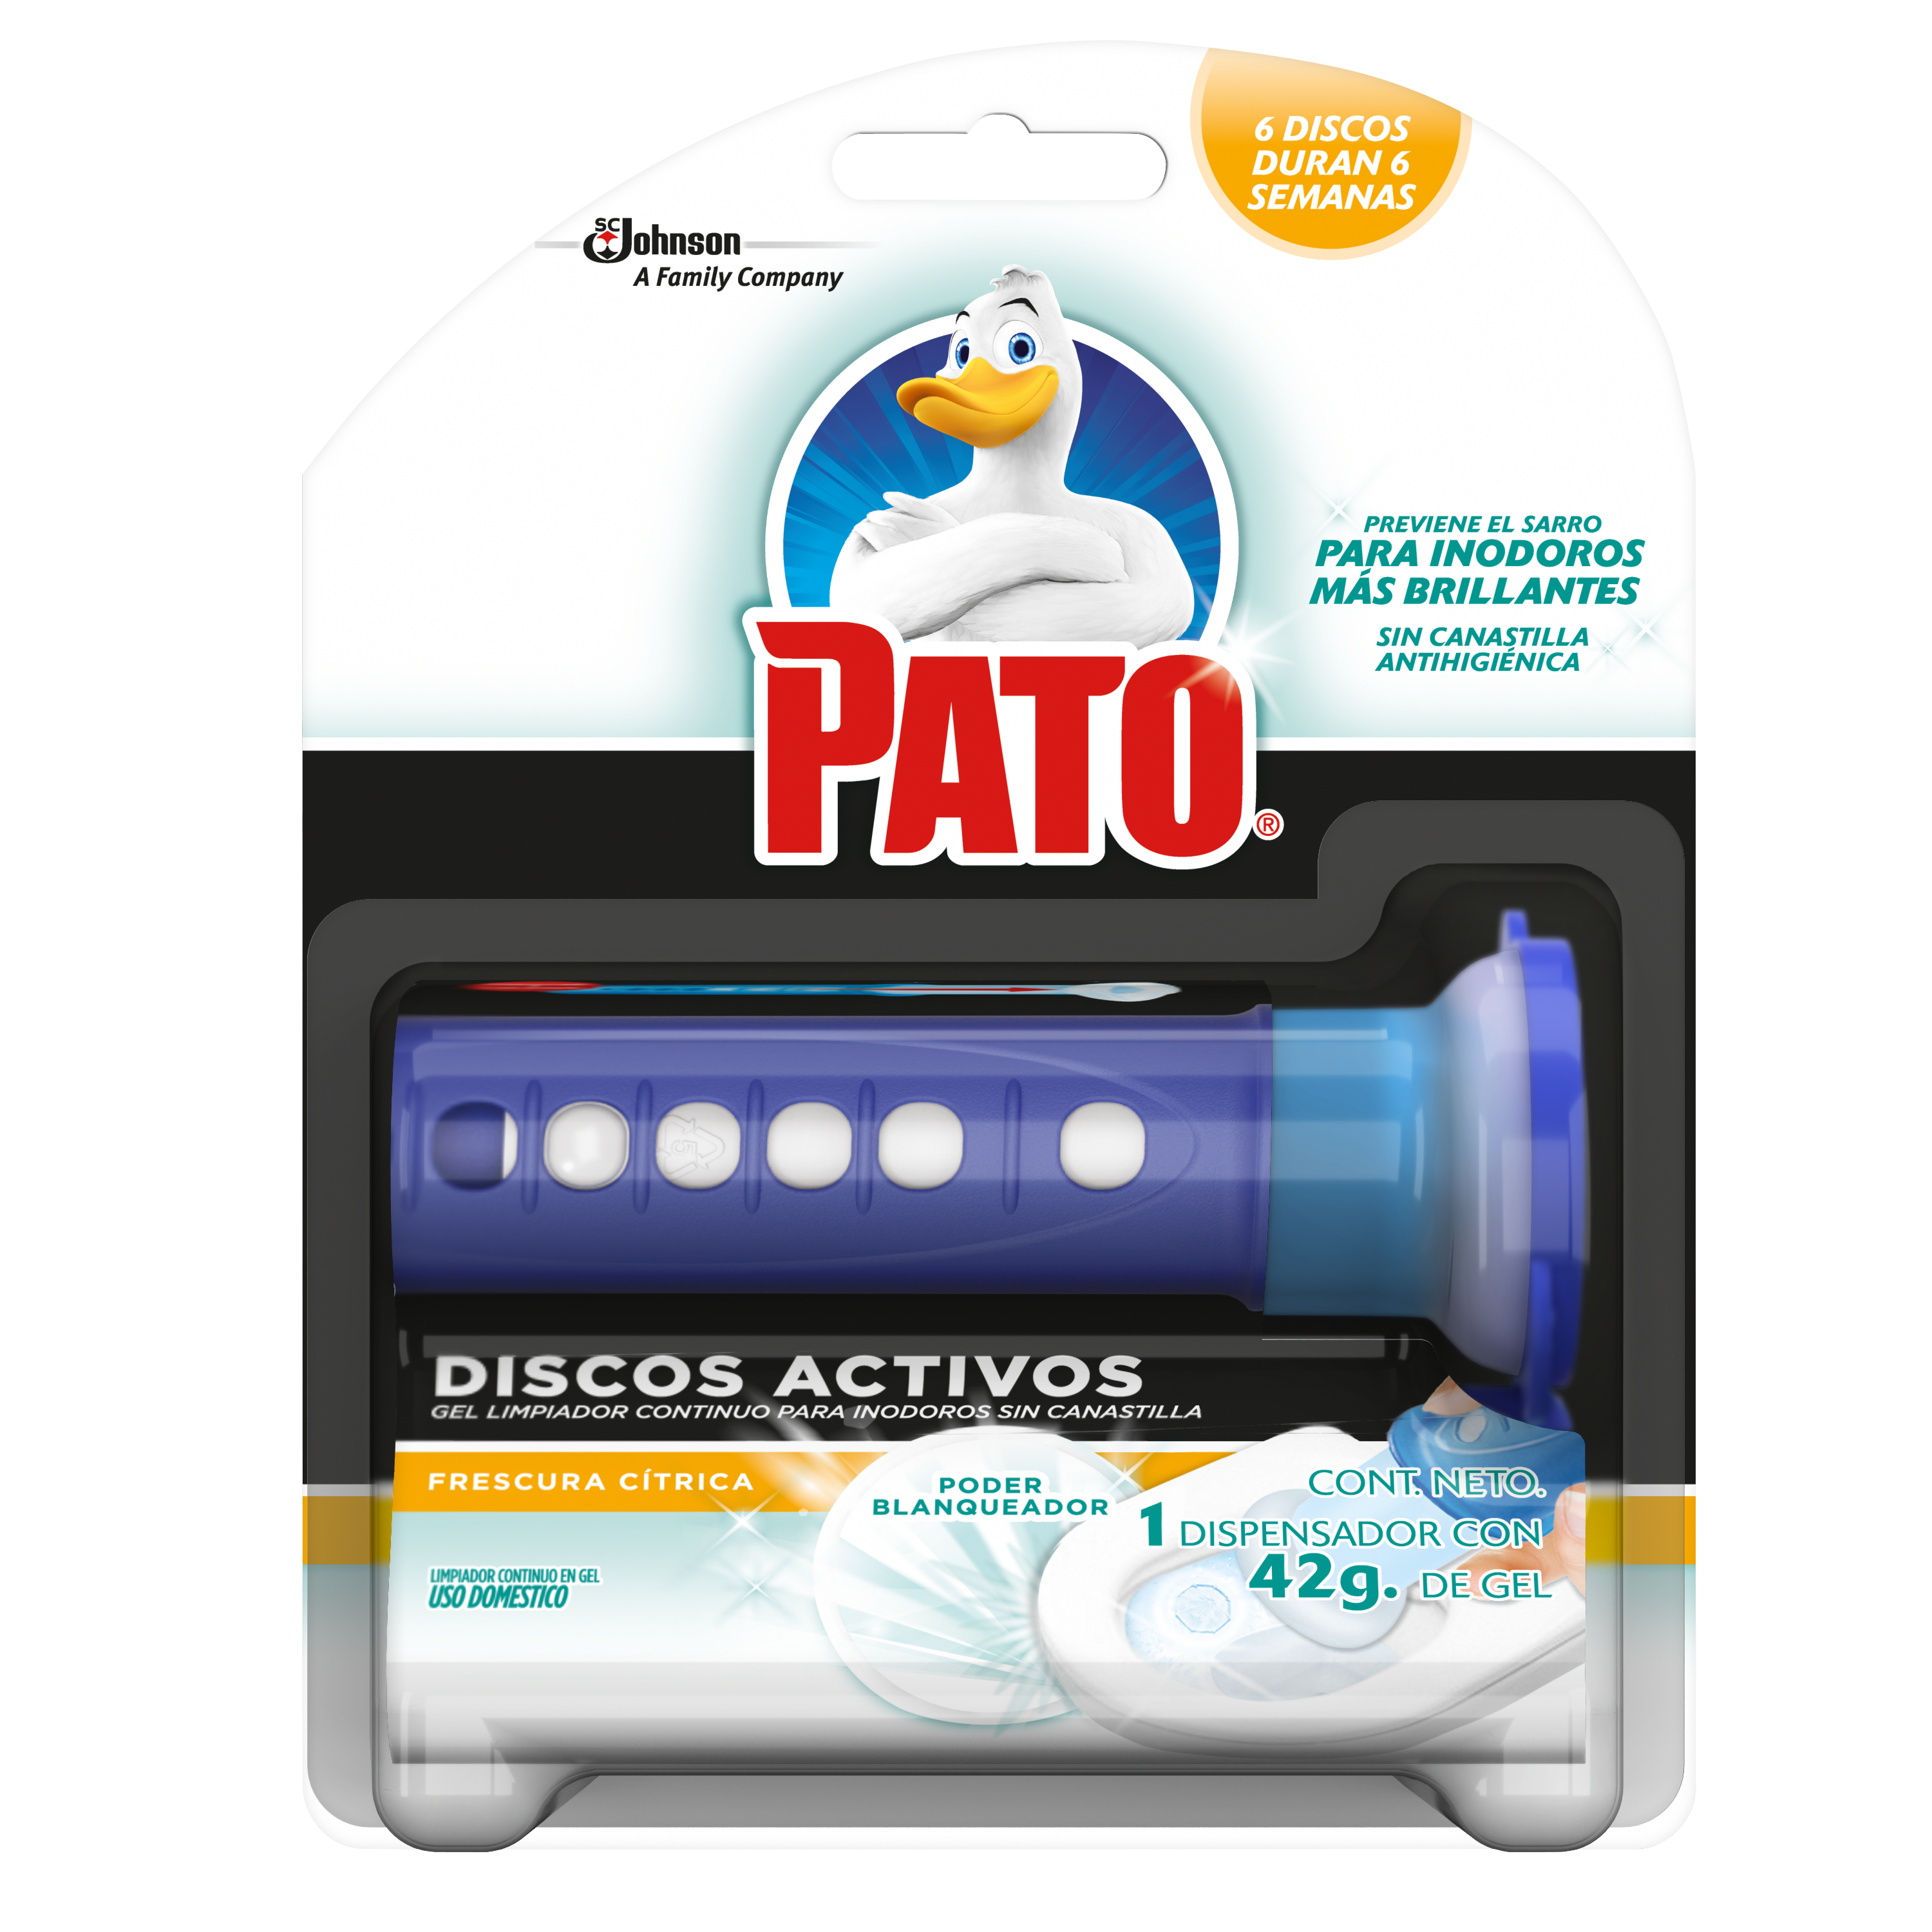 Pato® Discos Activos Frescura Citrica